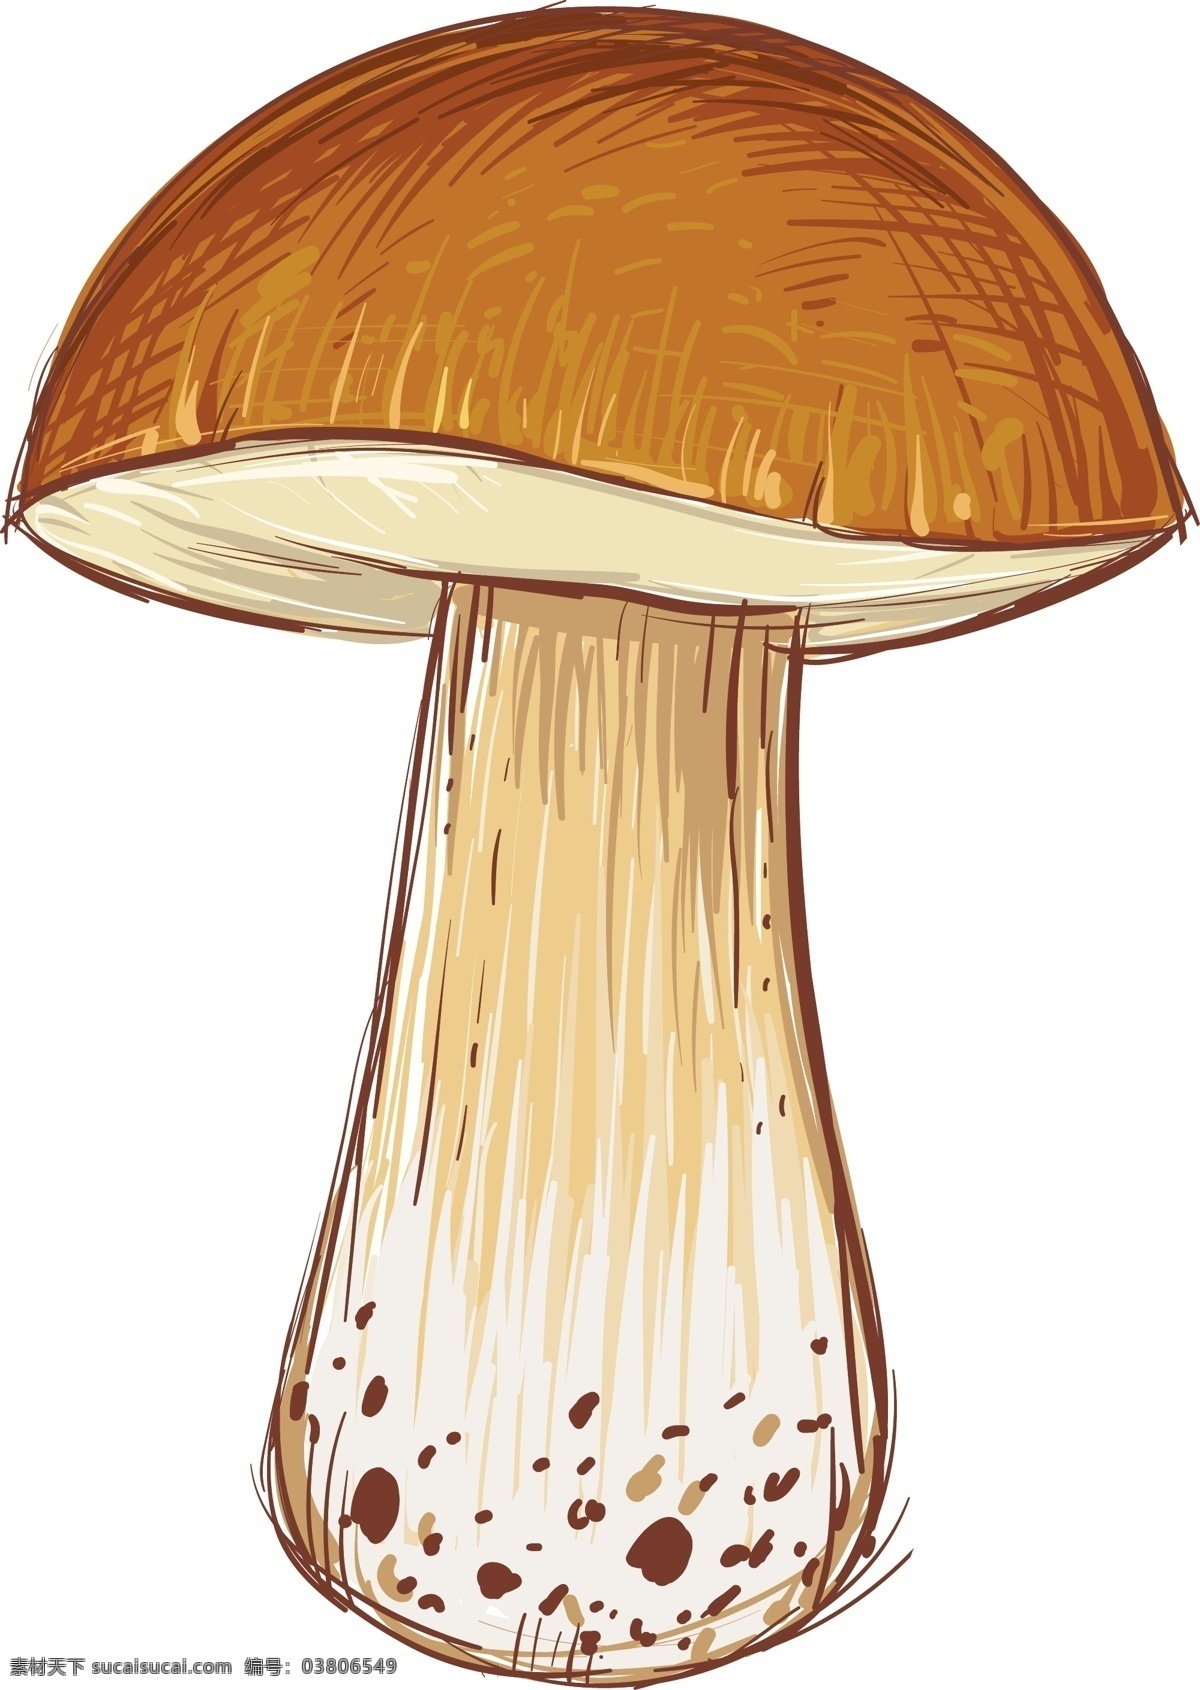 卡通 蘑菇 插画 矢量 模板下载 手绘 蘑菇插画 蘑菇设计 矢量蘑菇 卡通蘑菇 餐饮美食 生活百科 矢量素材 白色